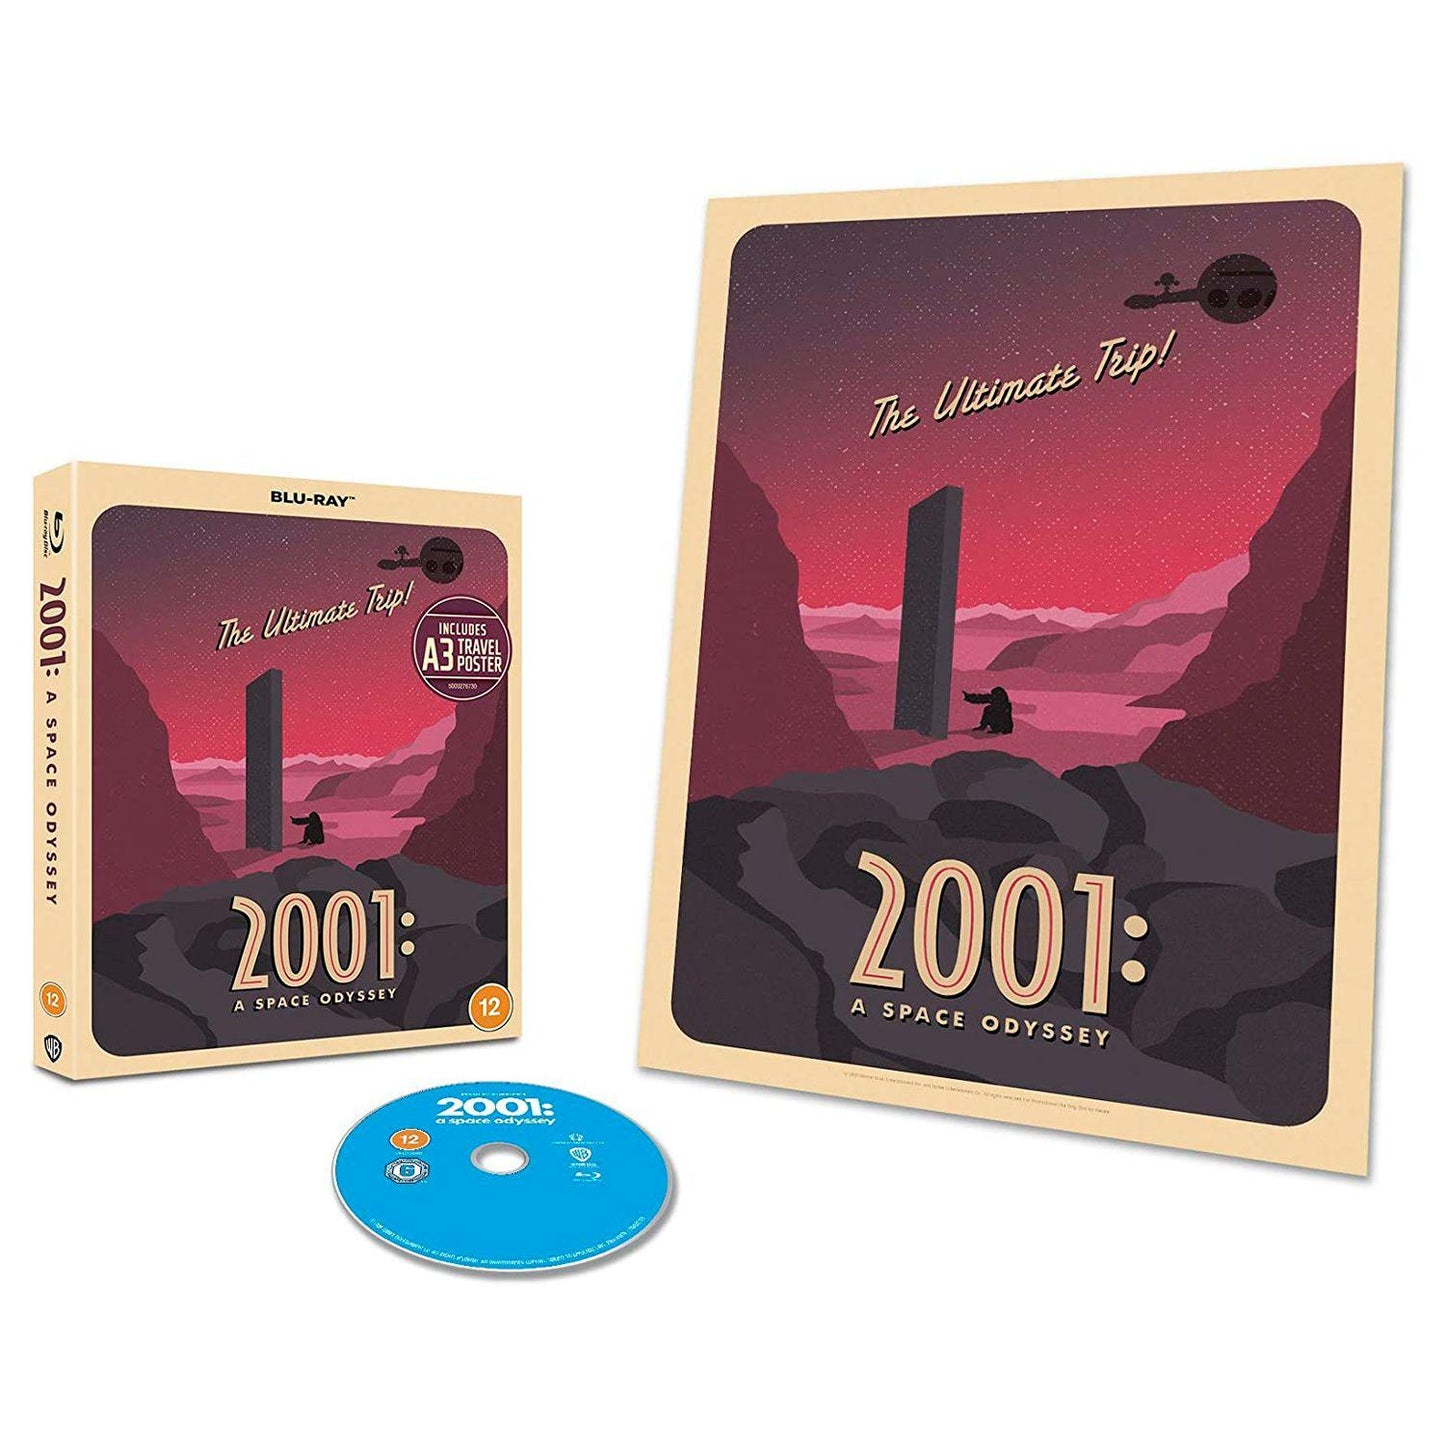 2001 год: Космическая одиссея (русские субтитры) (Blu-ray) [Special Poster Edition]